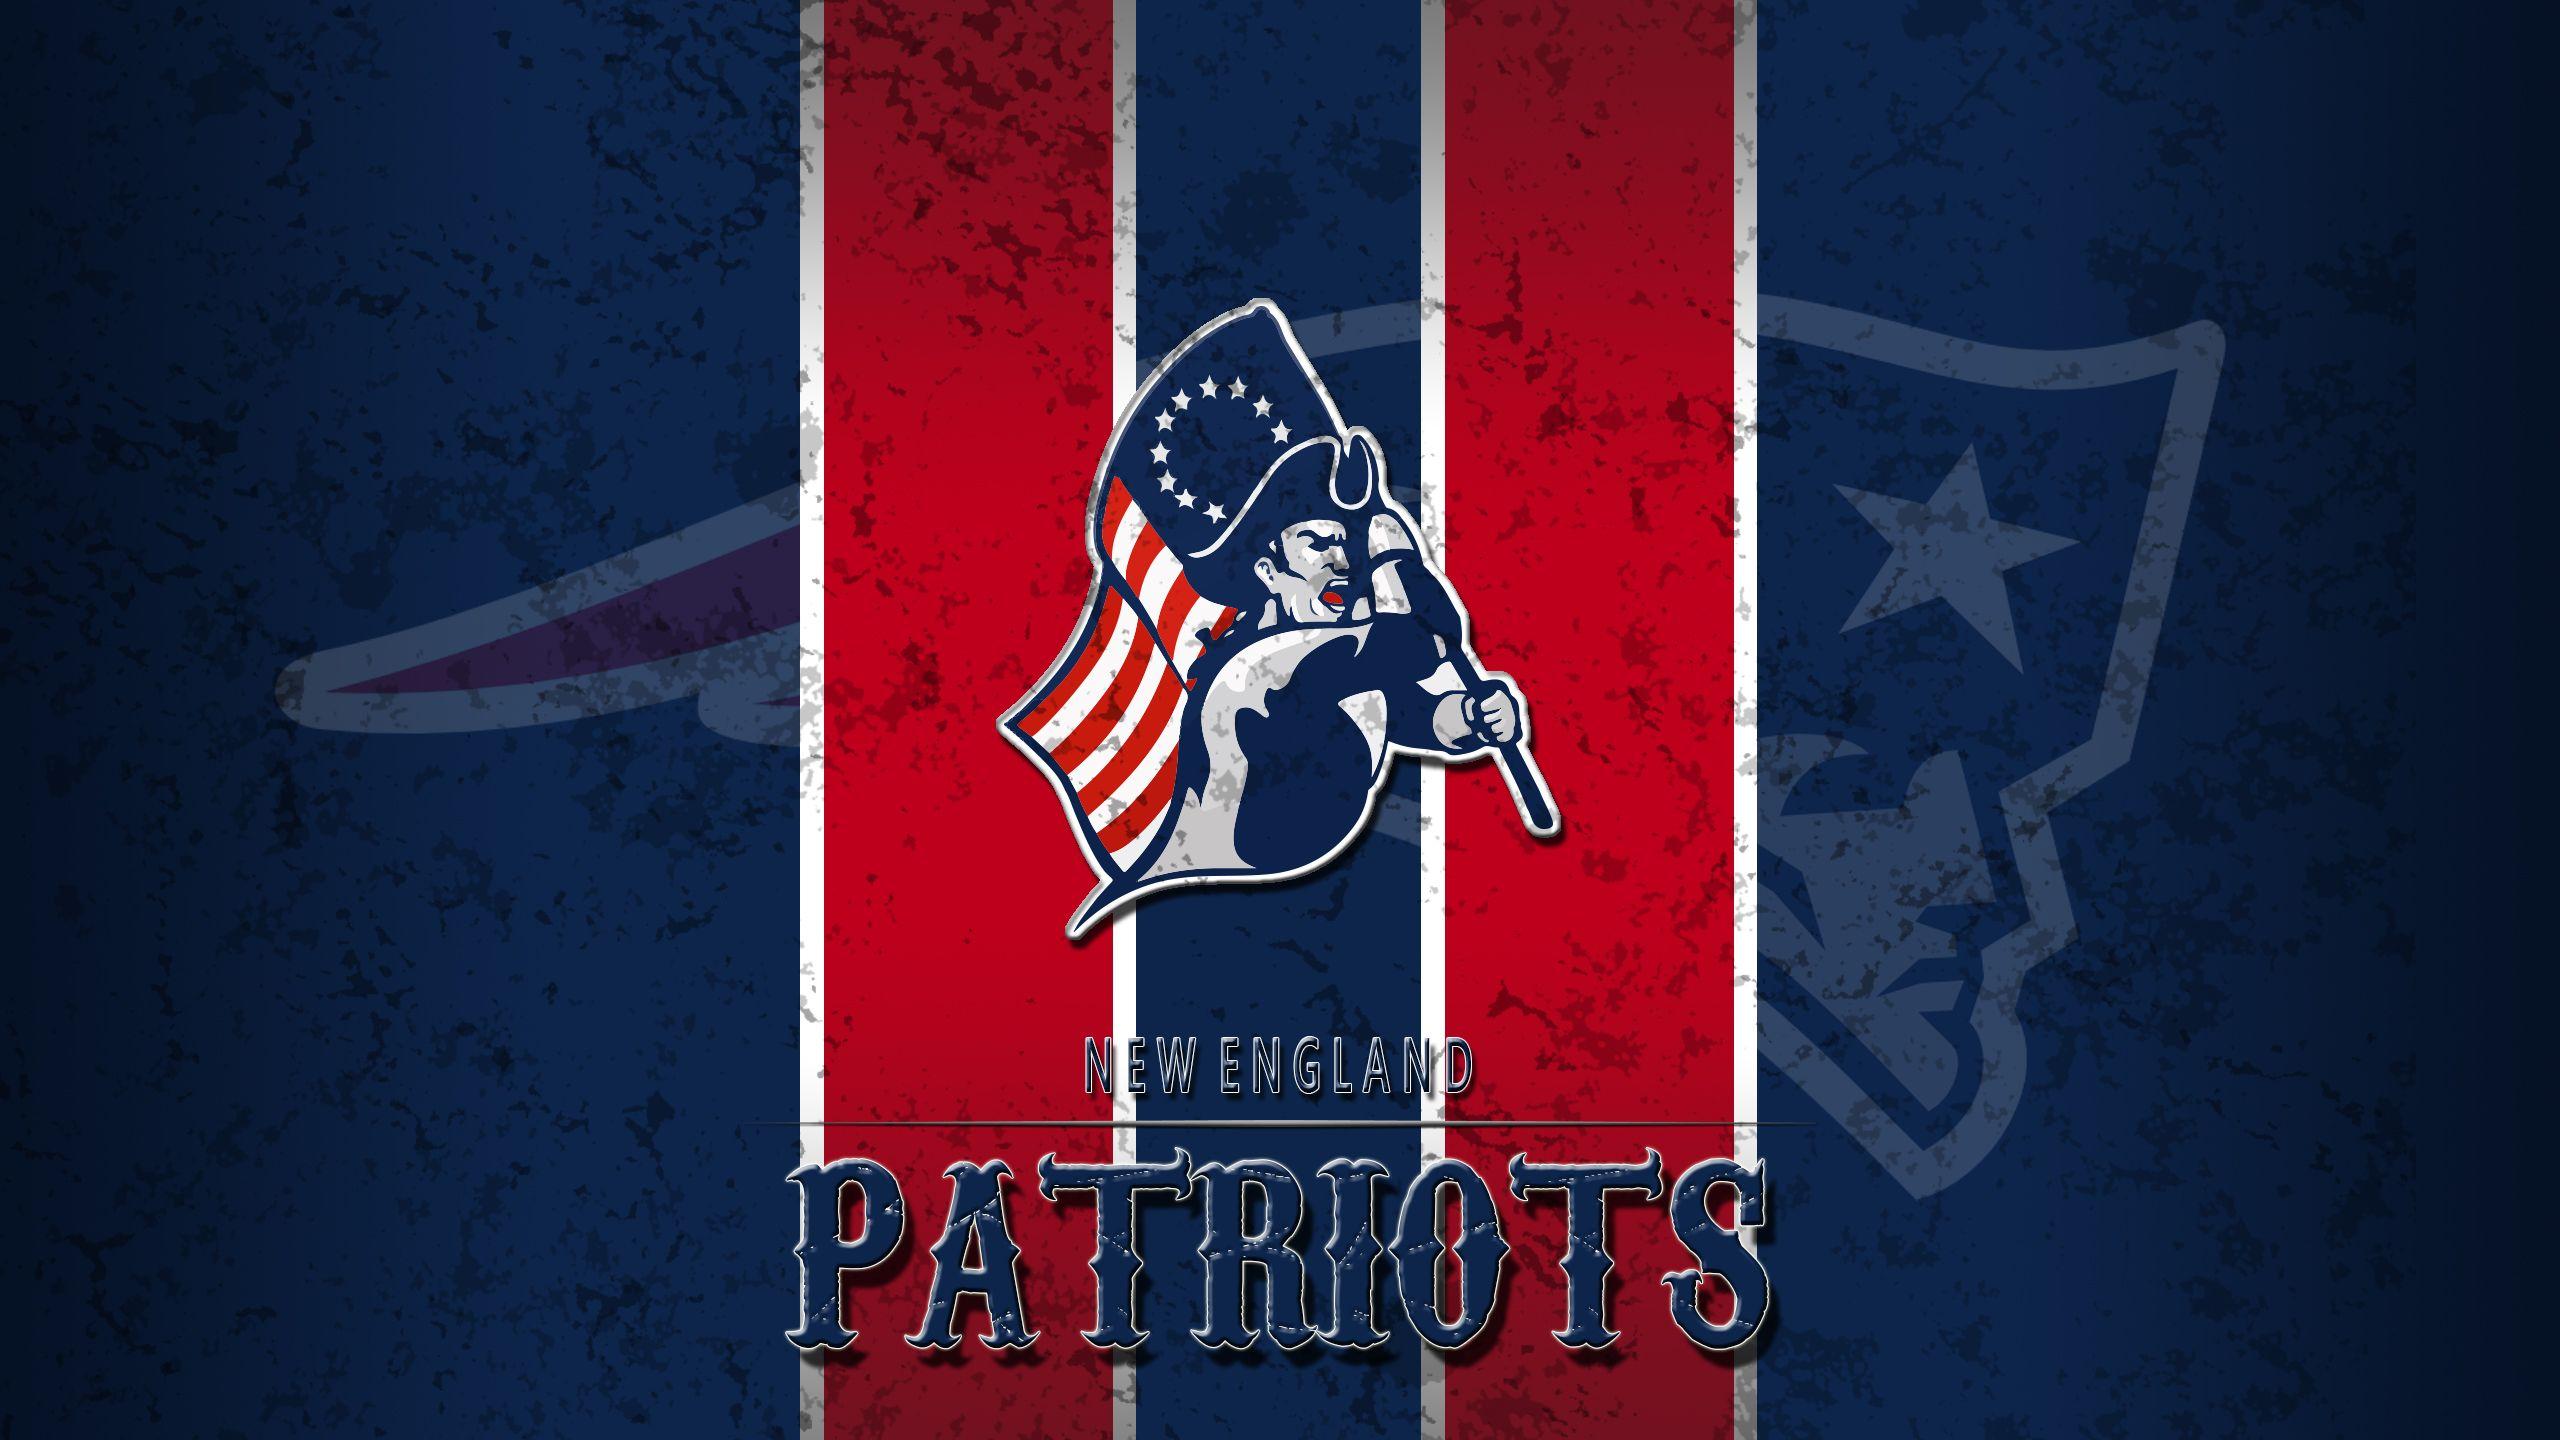 NFL Team Logo New England Patriots wallpaper HD 2016 in Football